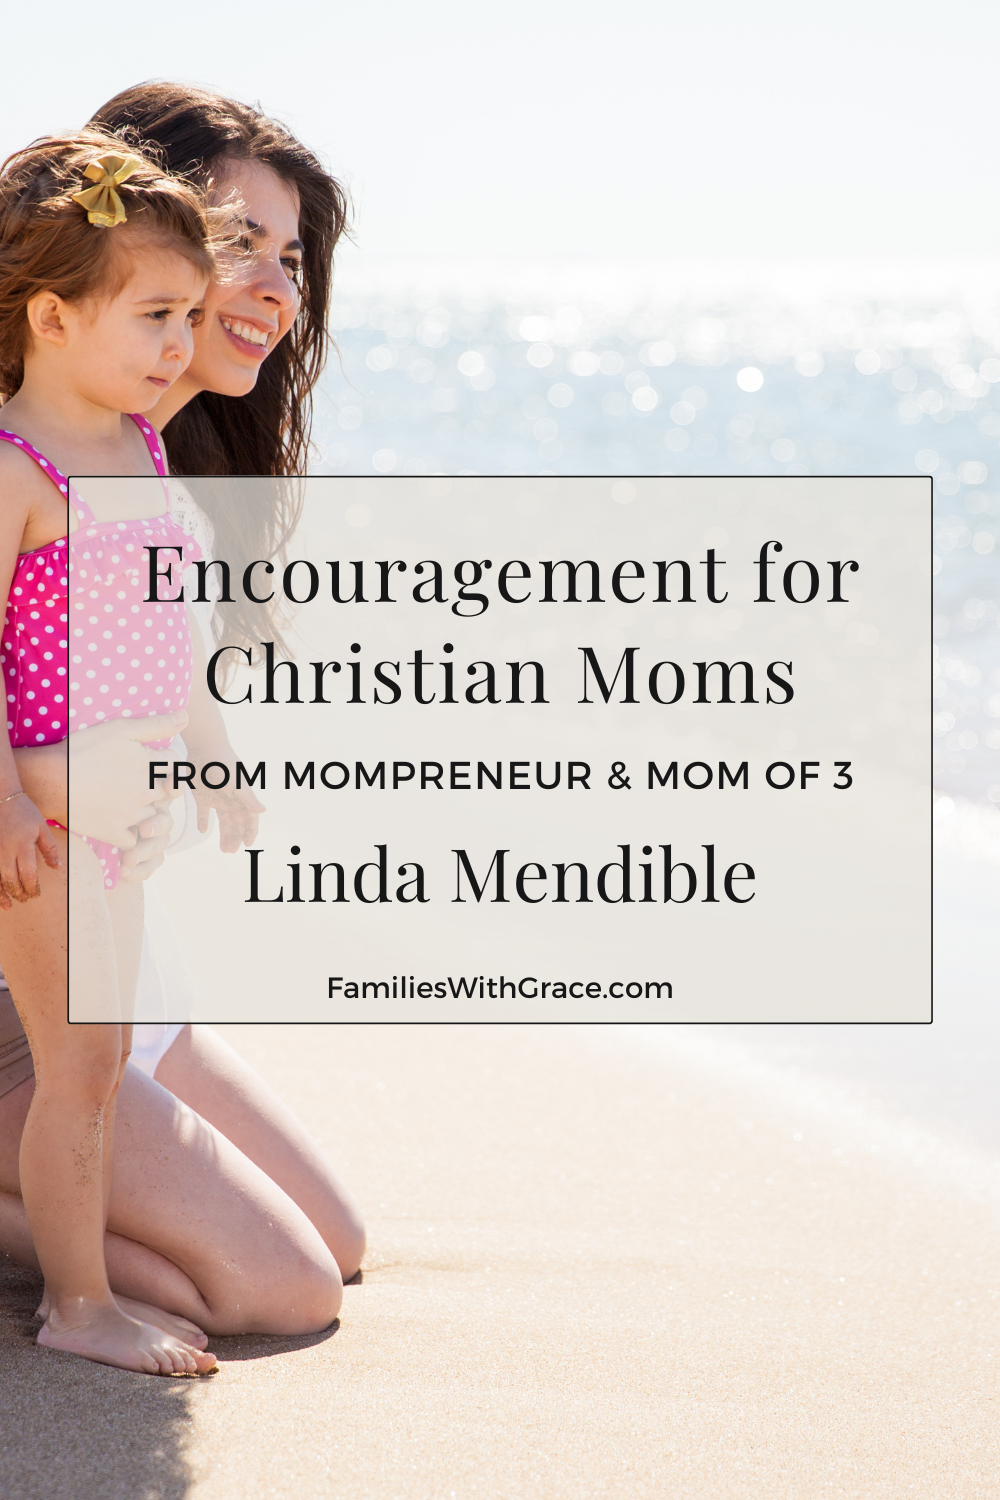 Moms with Grace: Linda Mendible